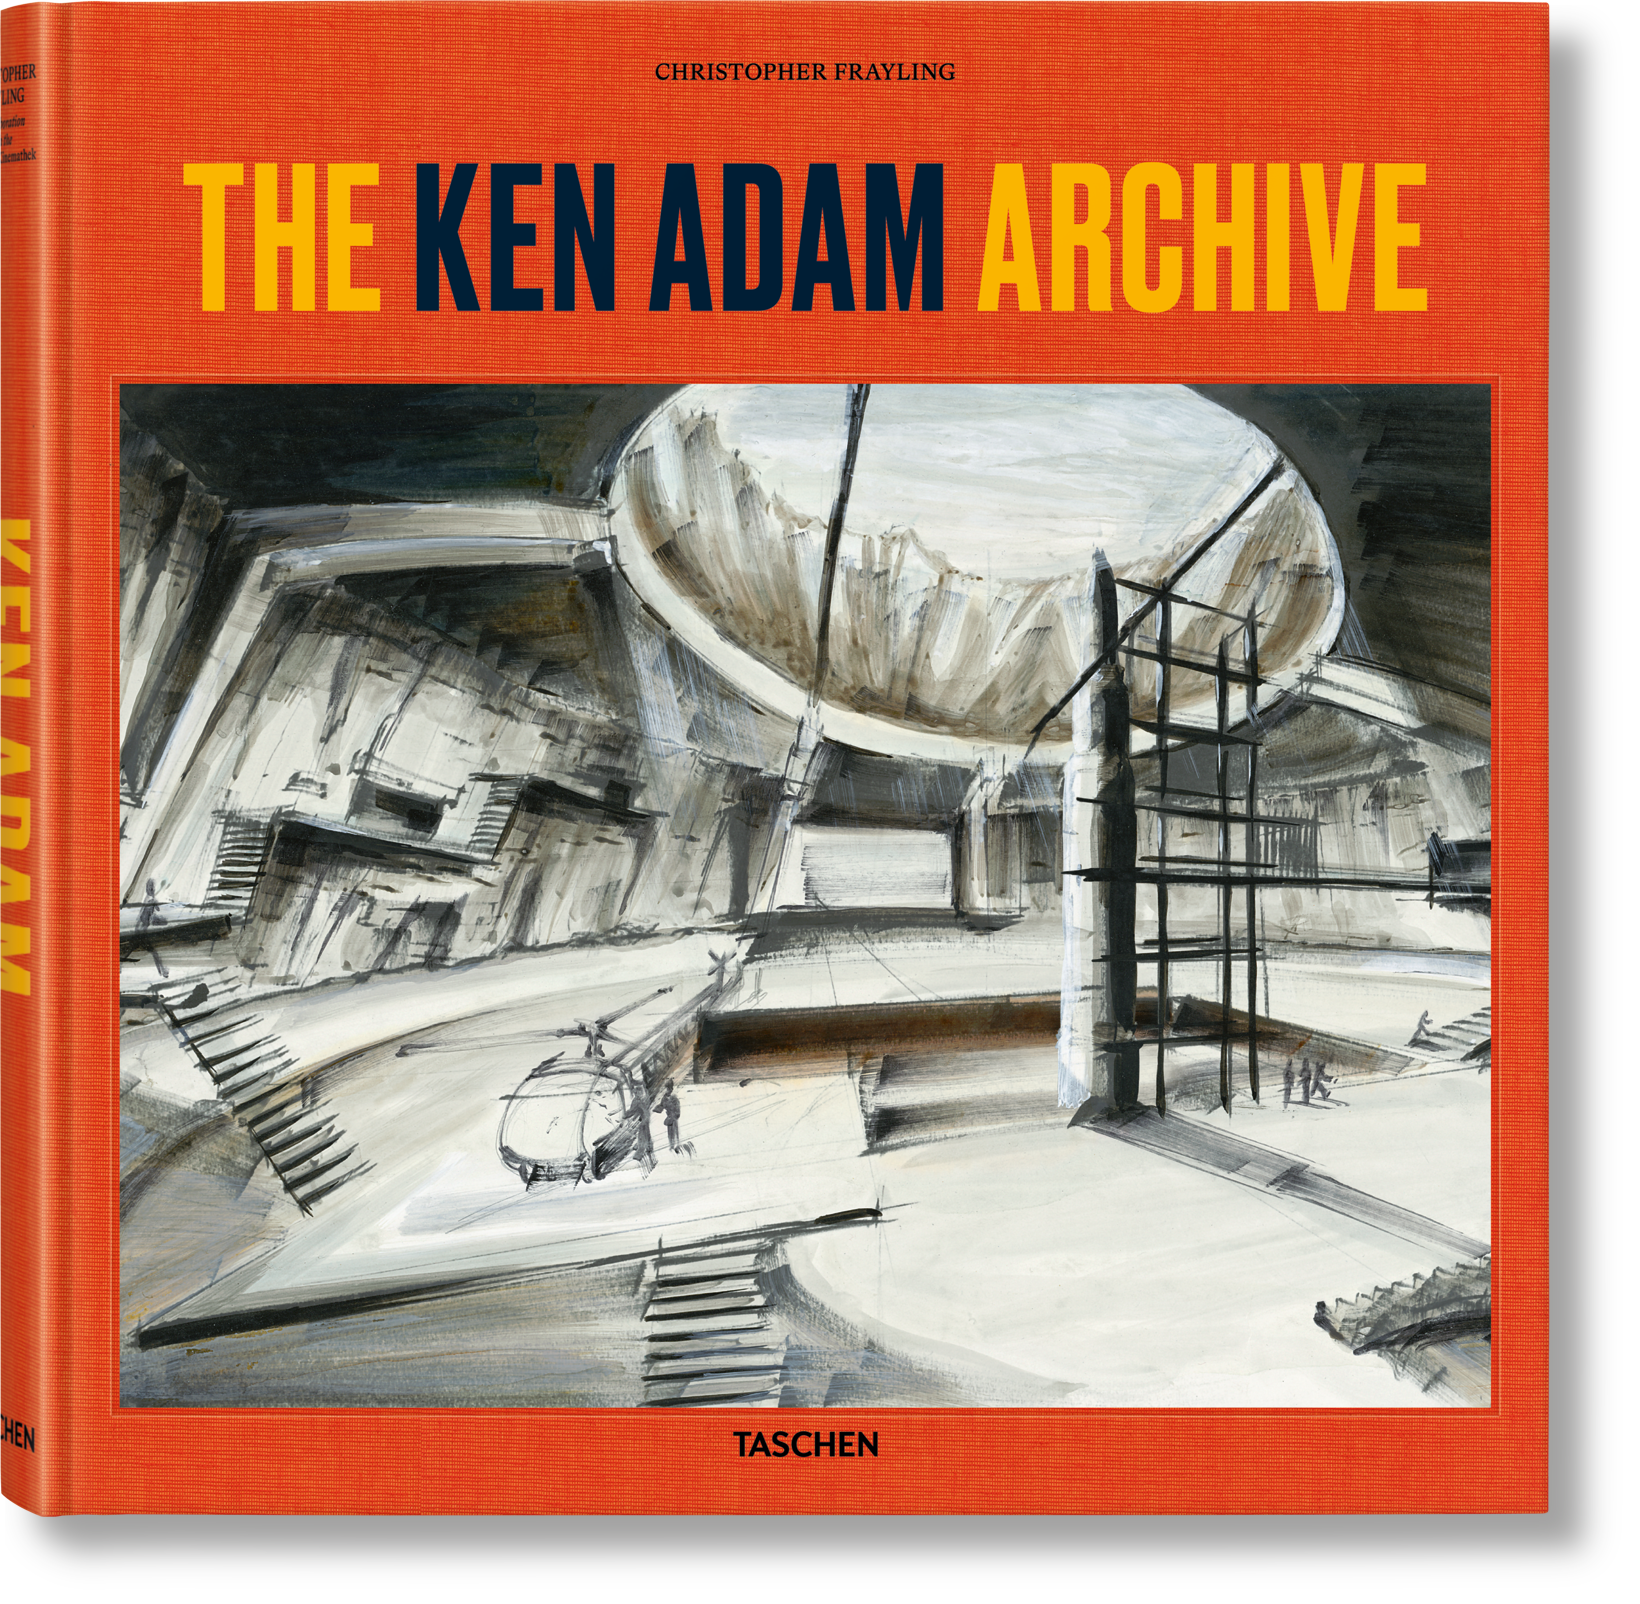 TASCHEN Books: The Ken Adam Archive